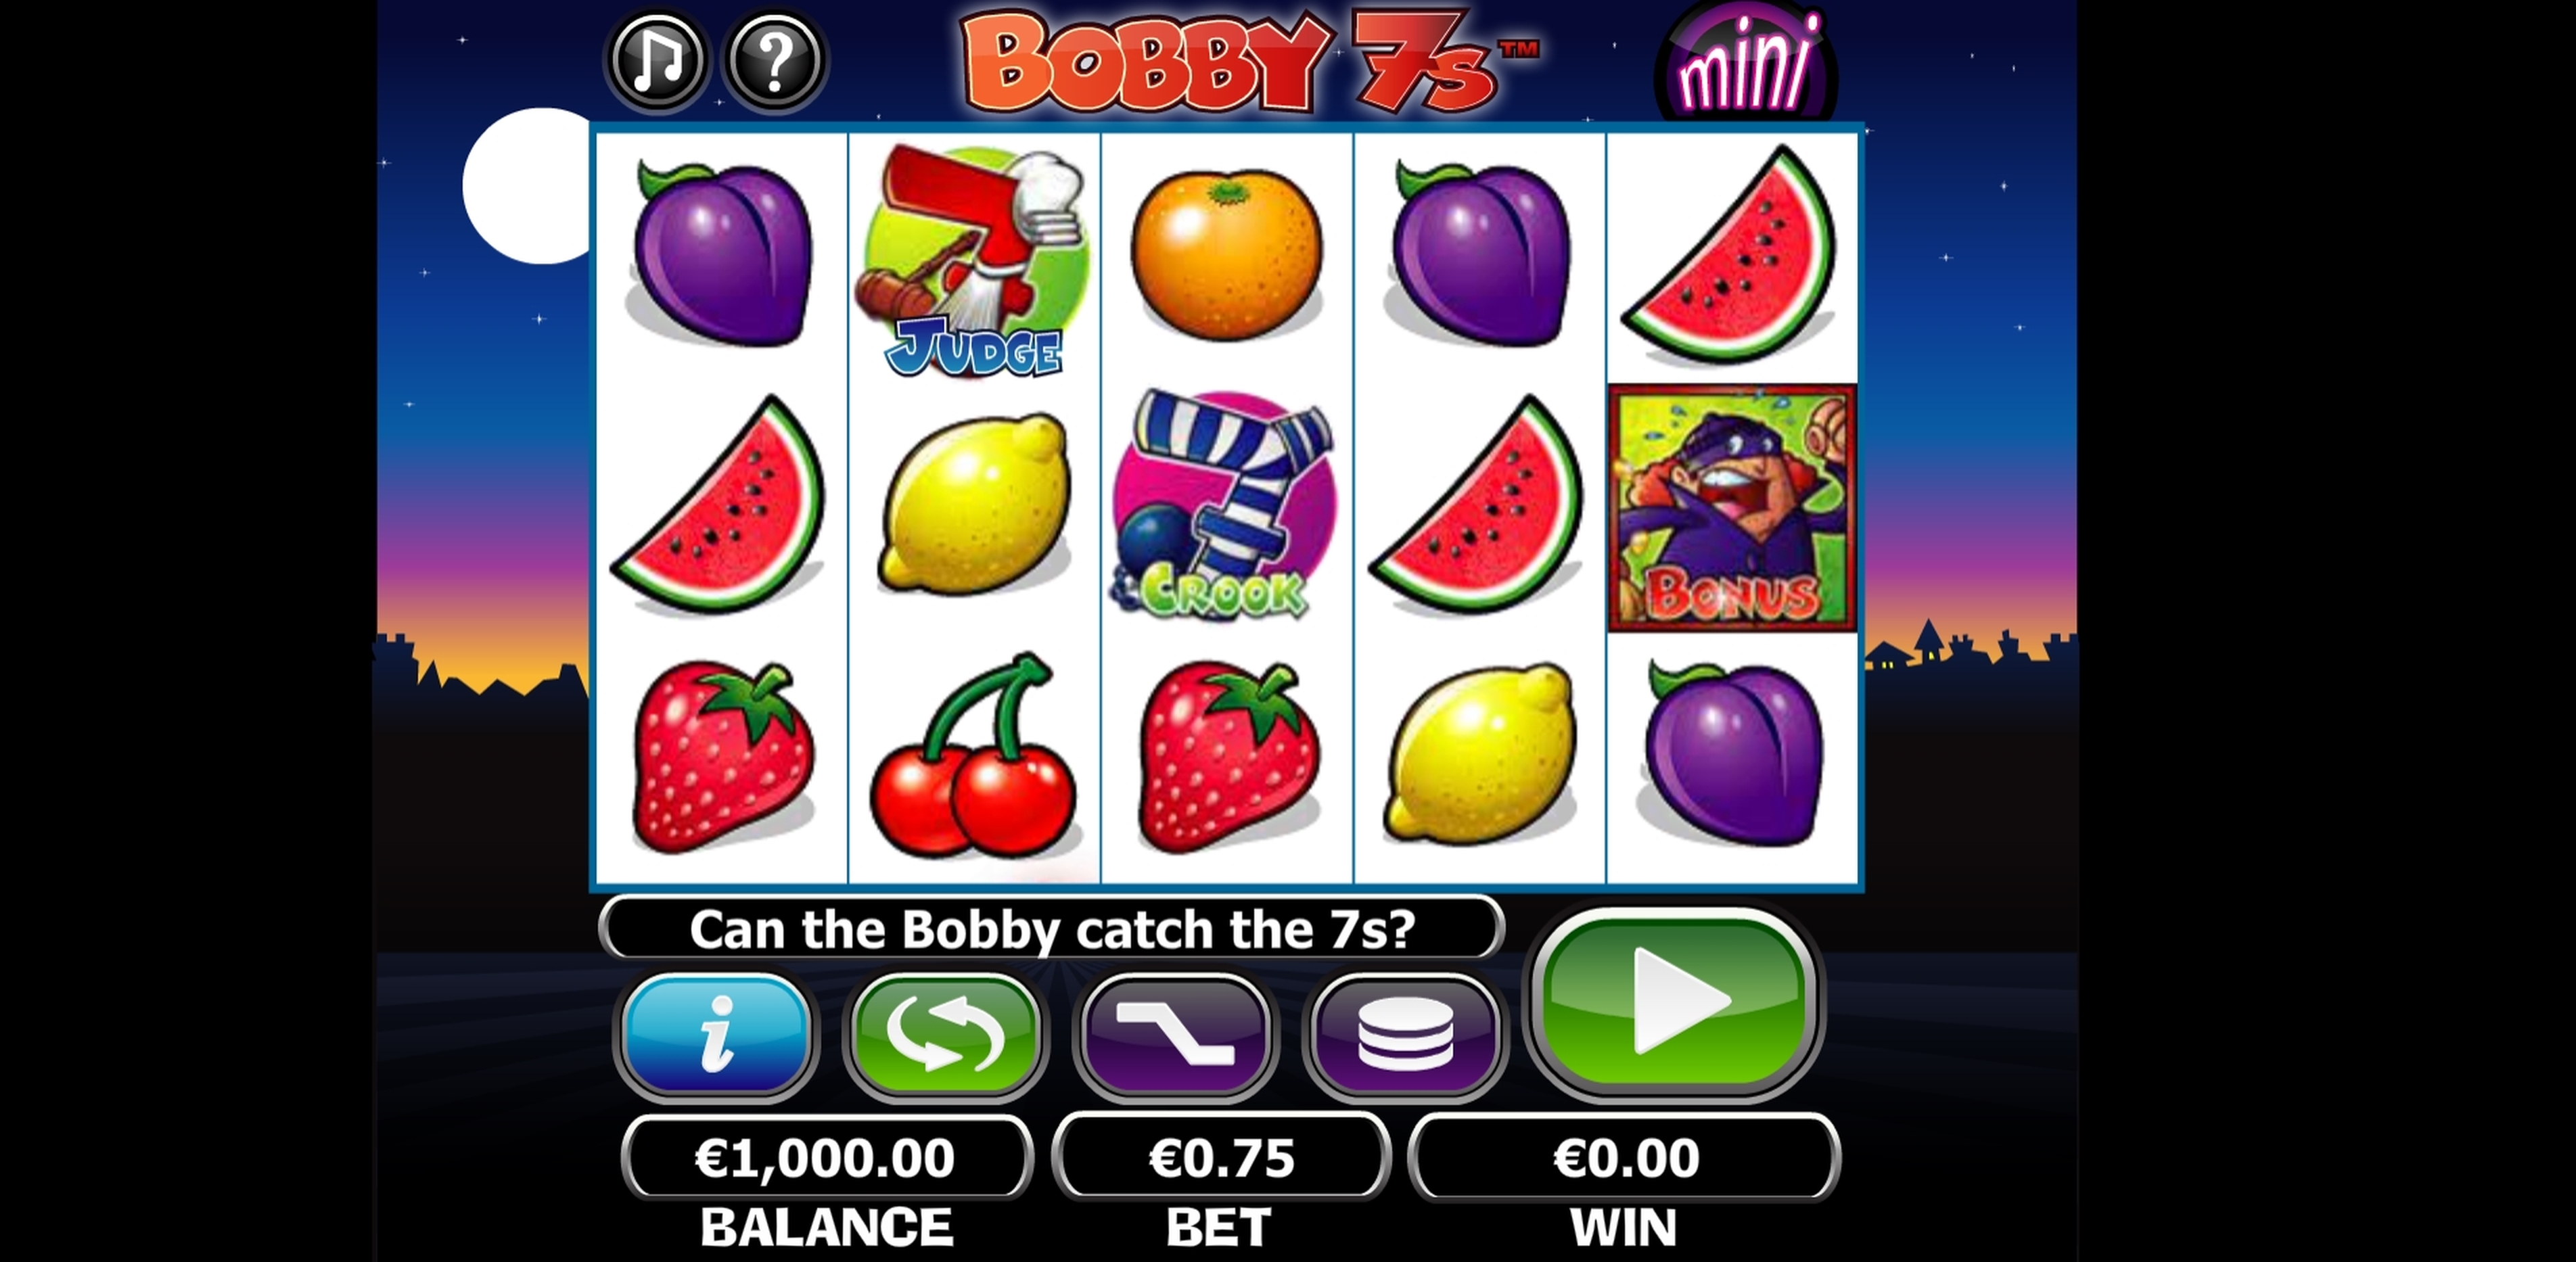 Reels in Bobby 7s Mini Slot Game by NextGen Gaming